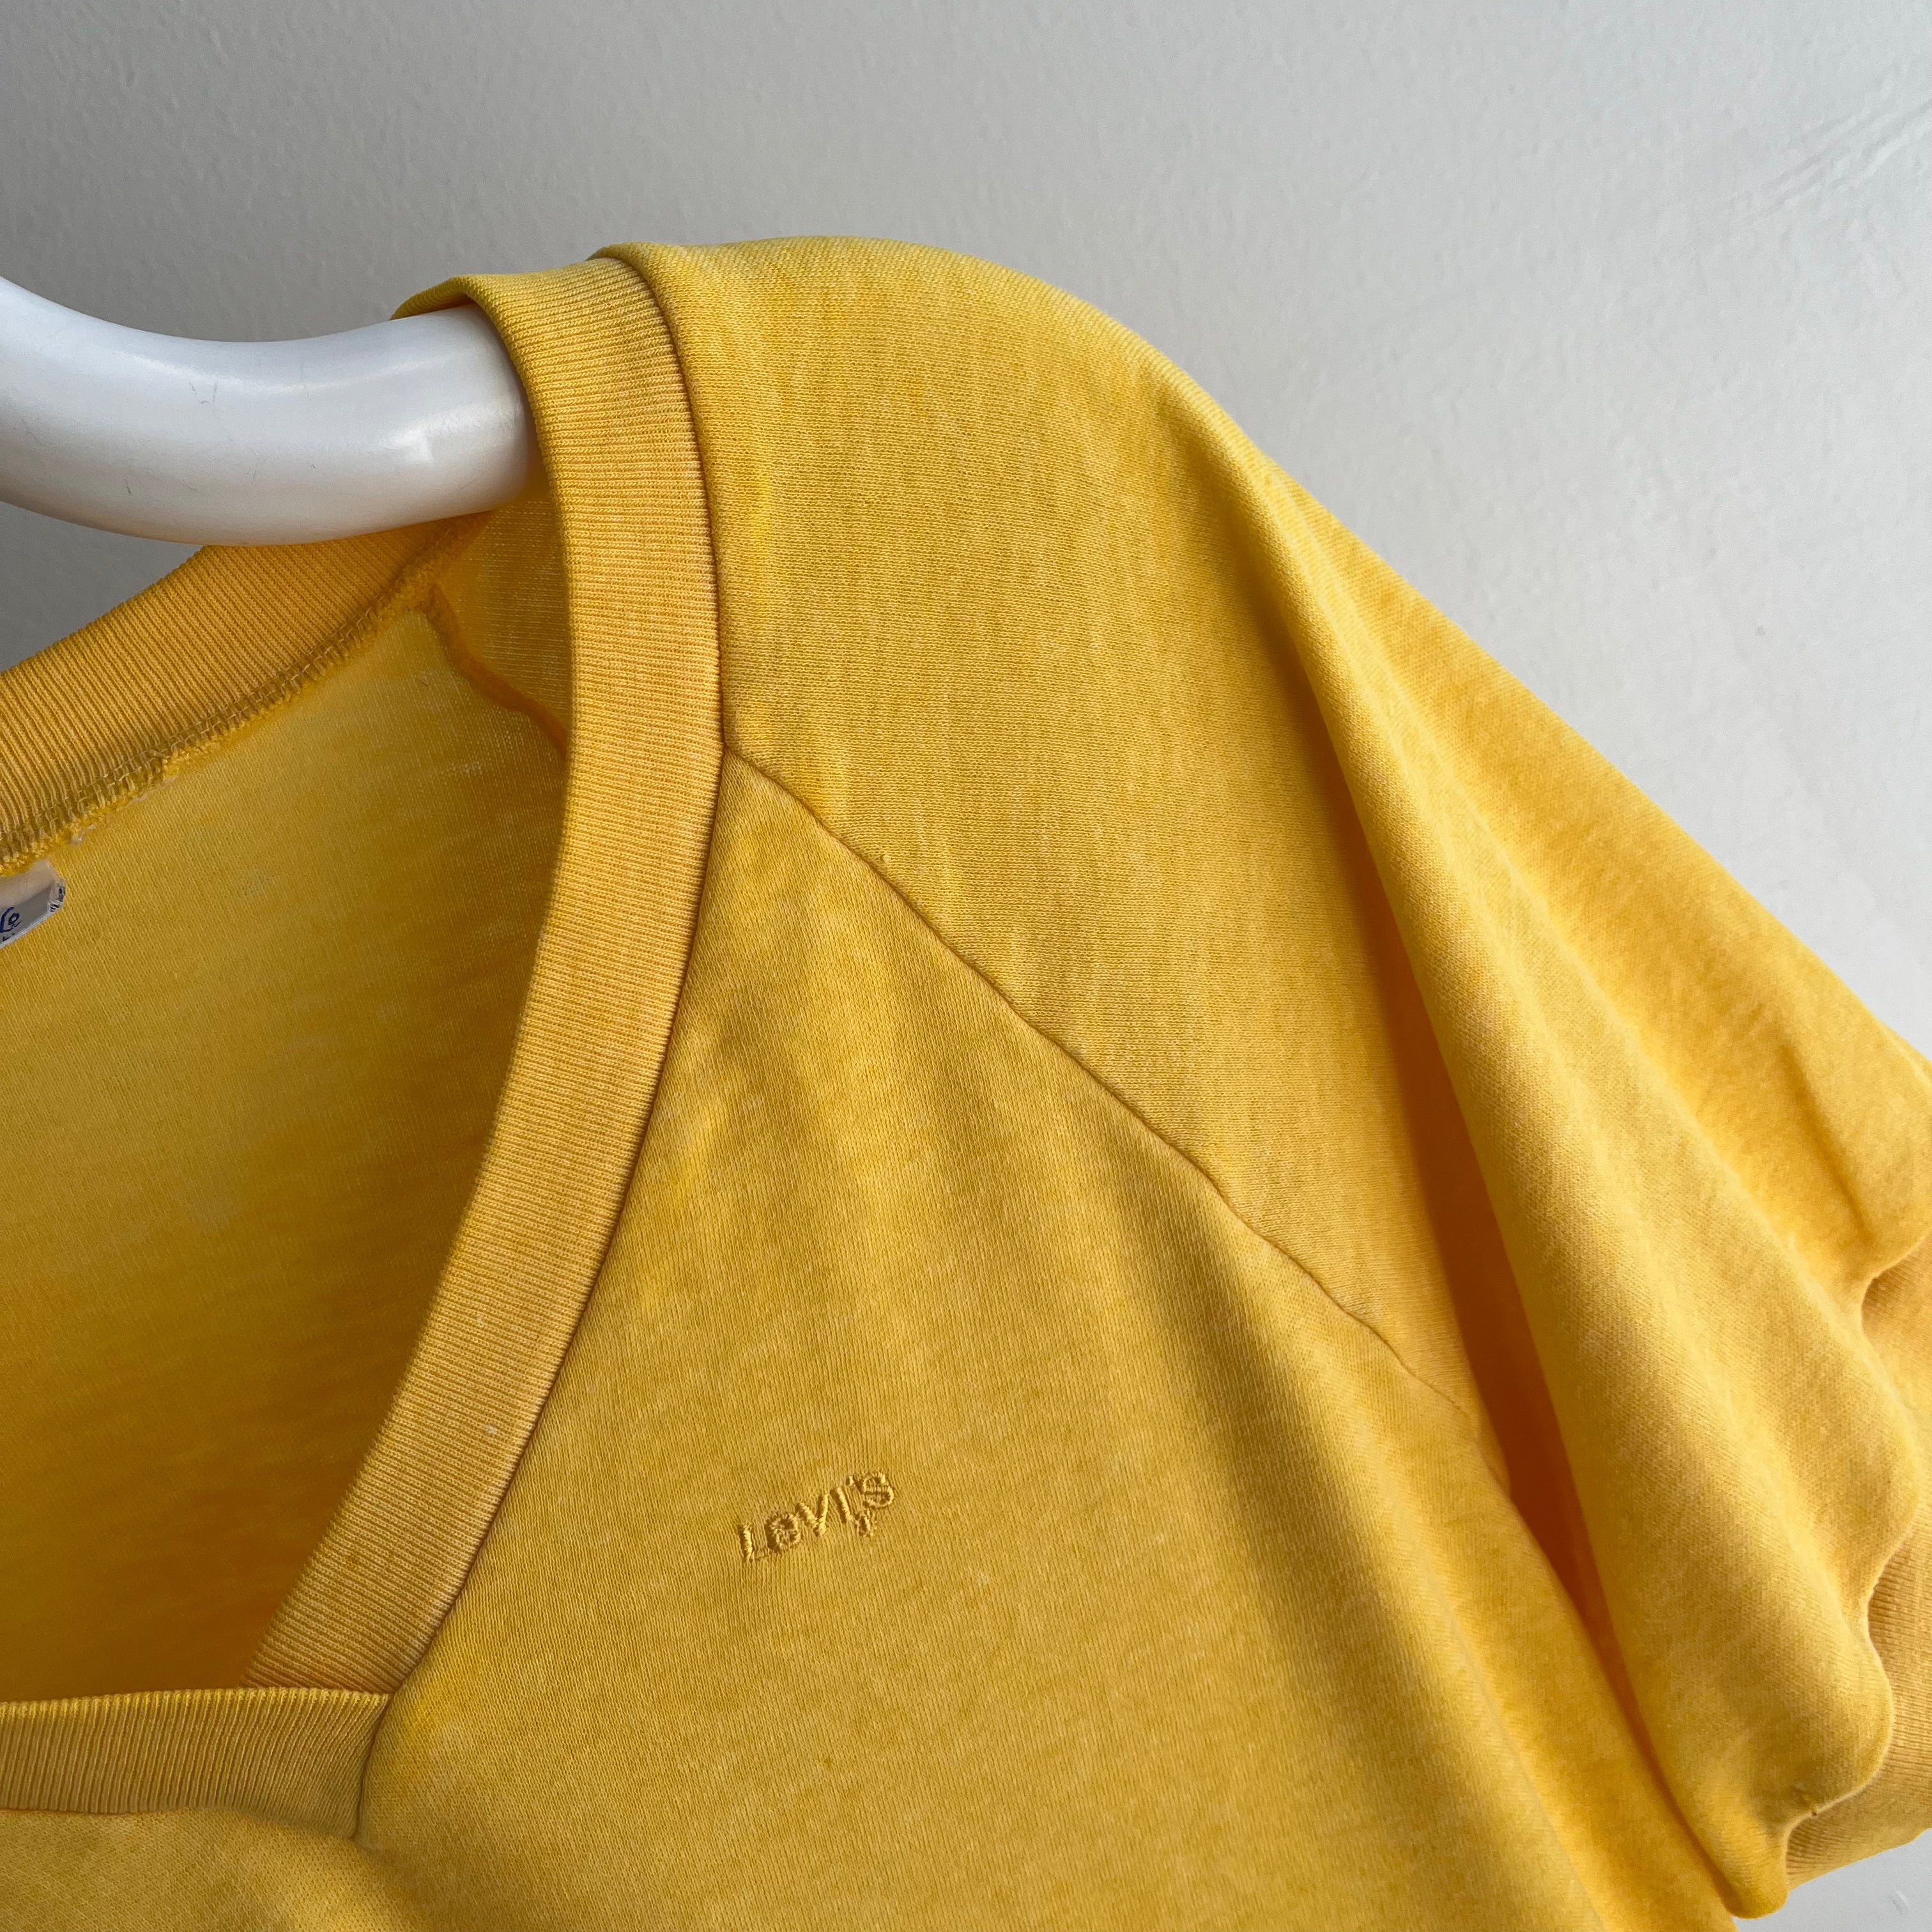 1980s Levi's Slouchy Mustard Jersey Knit Baseball T-Shirt